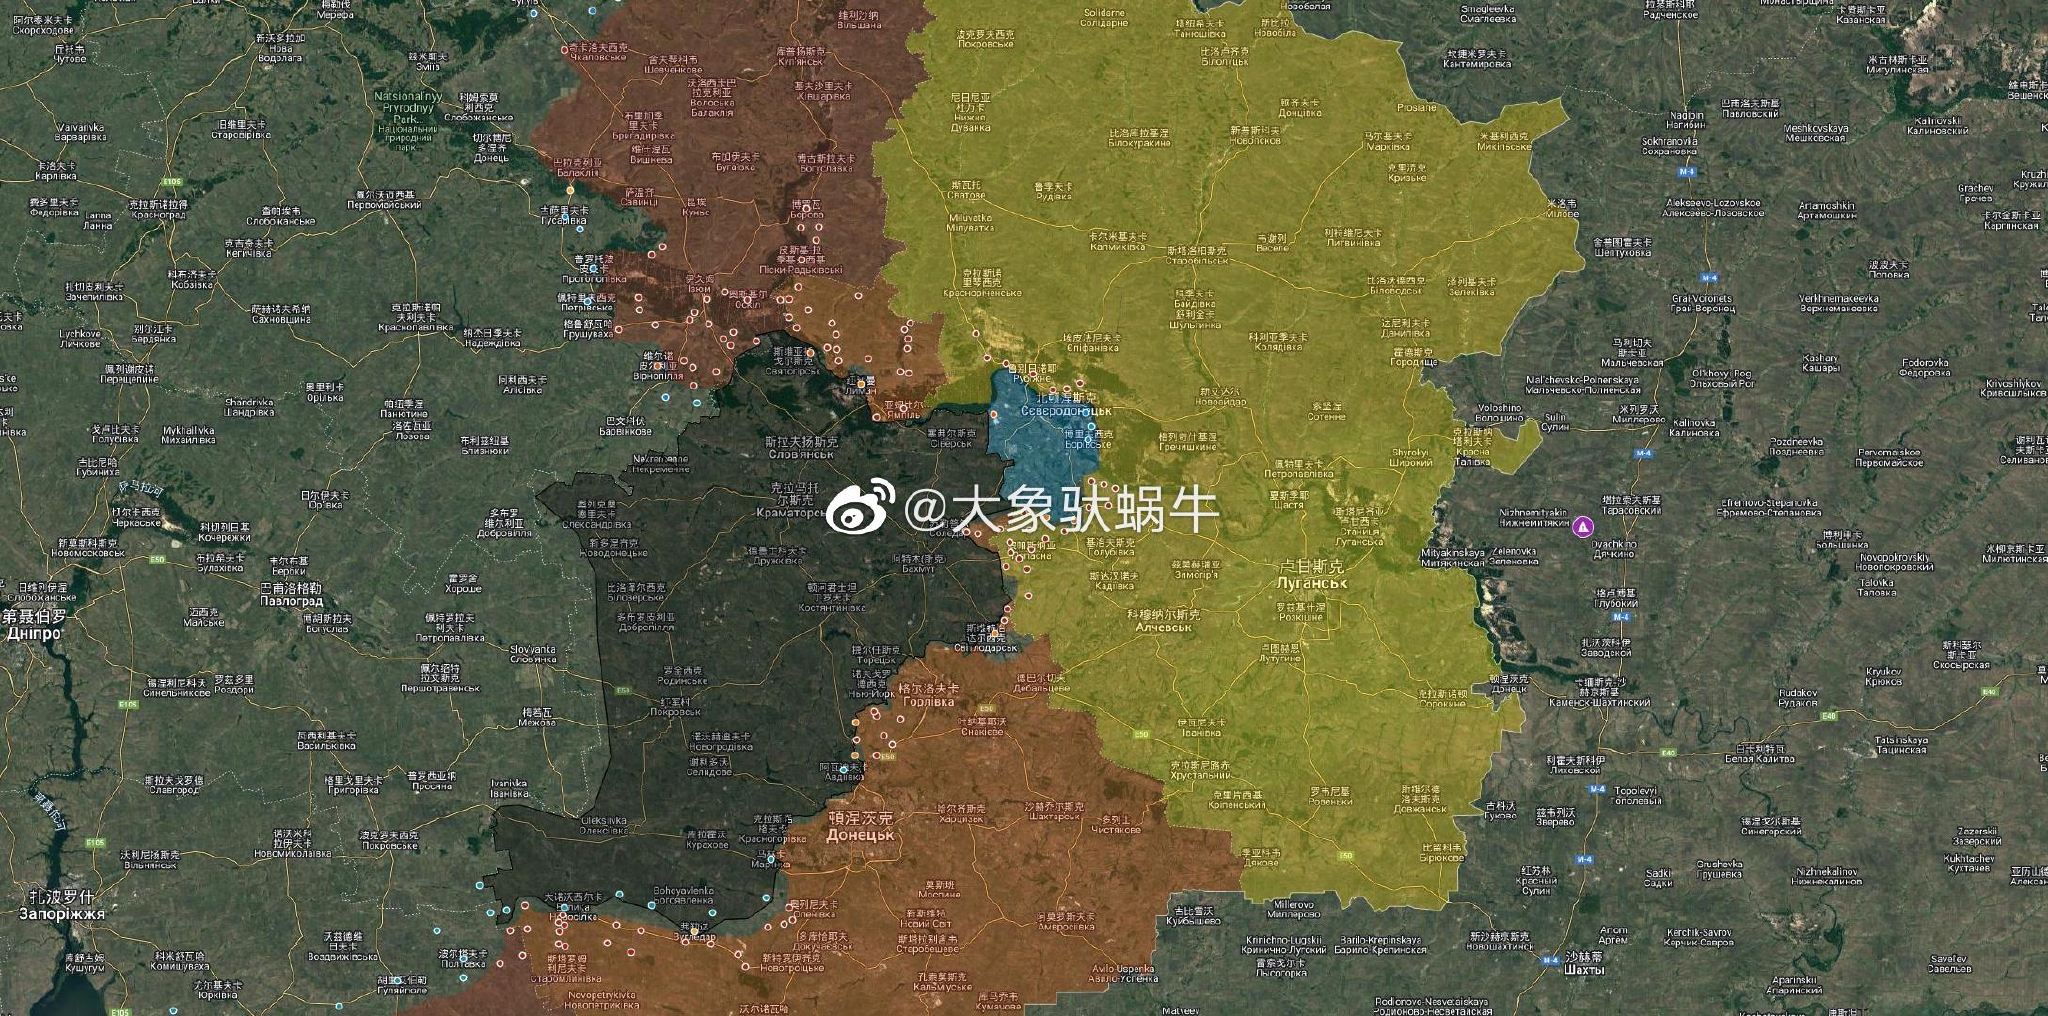 【俄乌沙盘1.26下集】俄军在顿涅茨克，突然发起攻势！ - 哔哩哔哩